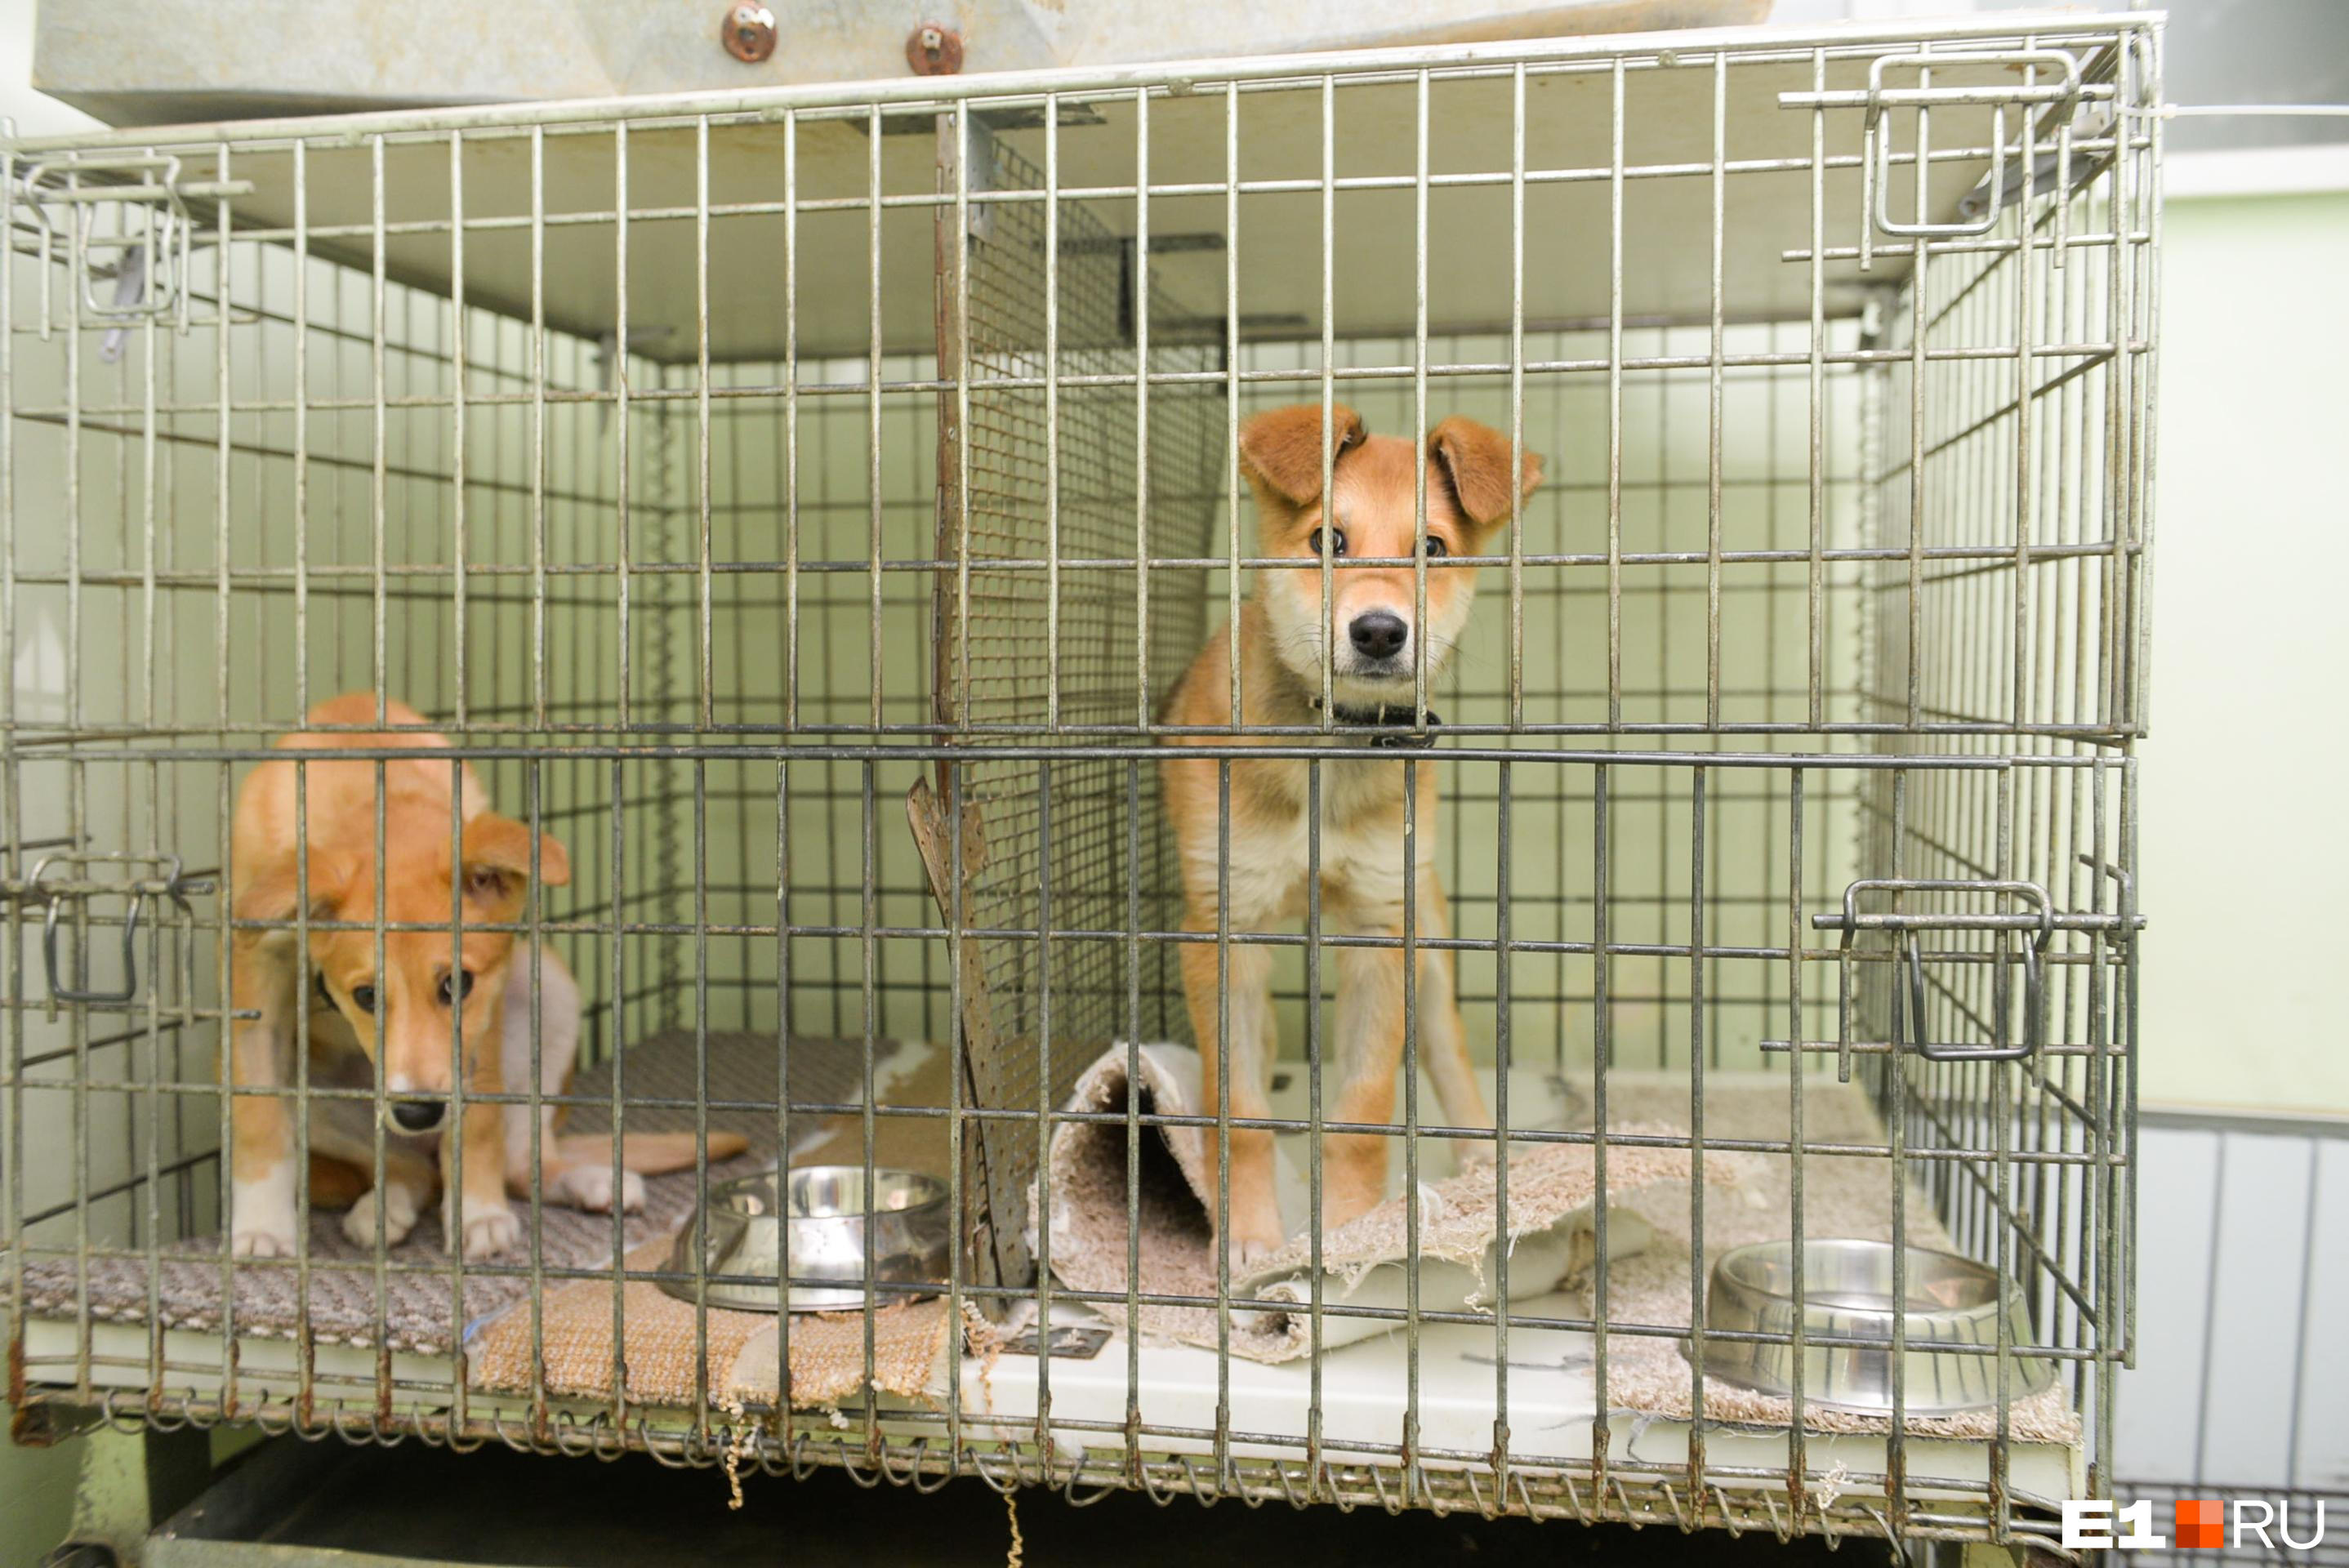 Госветслужба объяснила перевозку животных из приюта в Чите